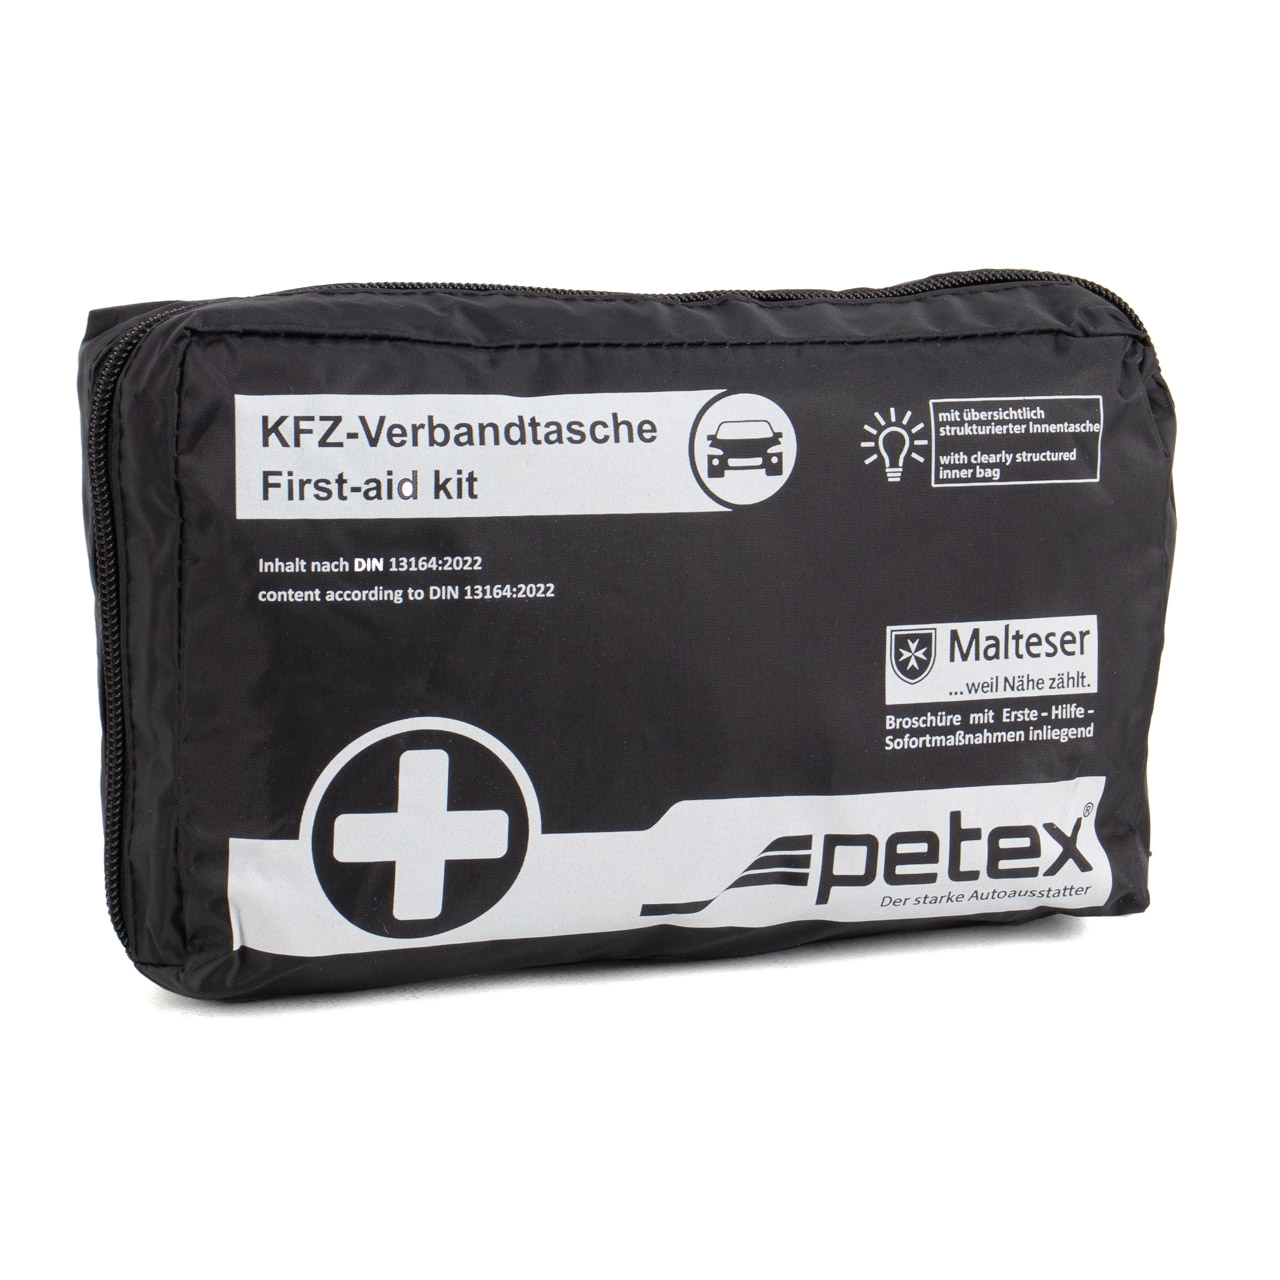 4x PETEX KFZ Verbandtasche Verbandkasten Erste-Hilfe SCHWARZ DIN13164-2022 (MHD 04.2028)